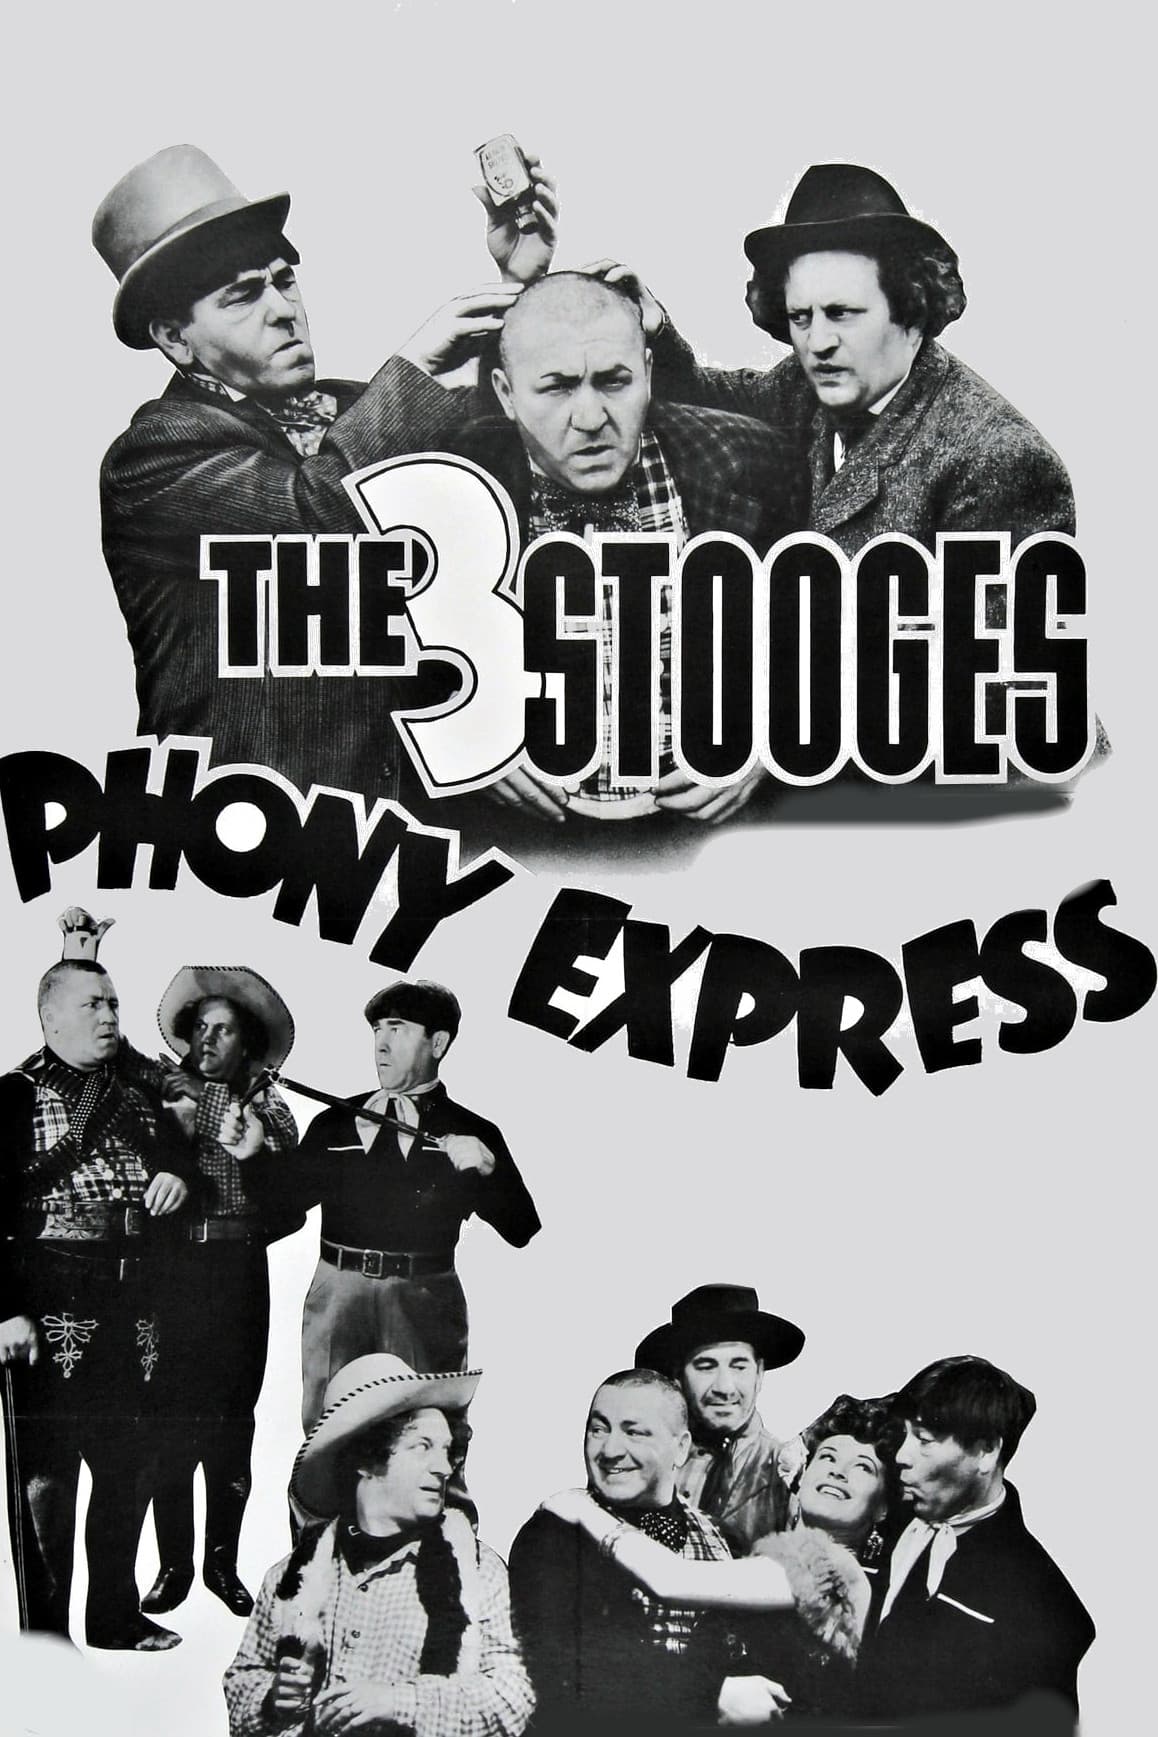 Phony Express